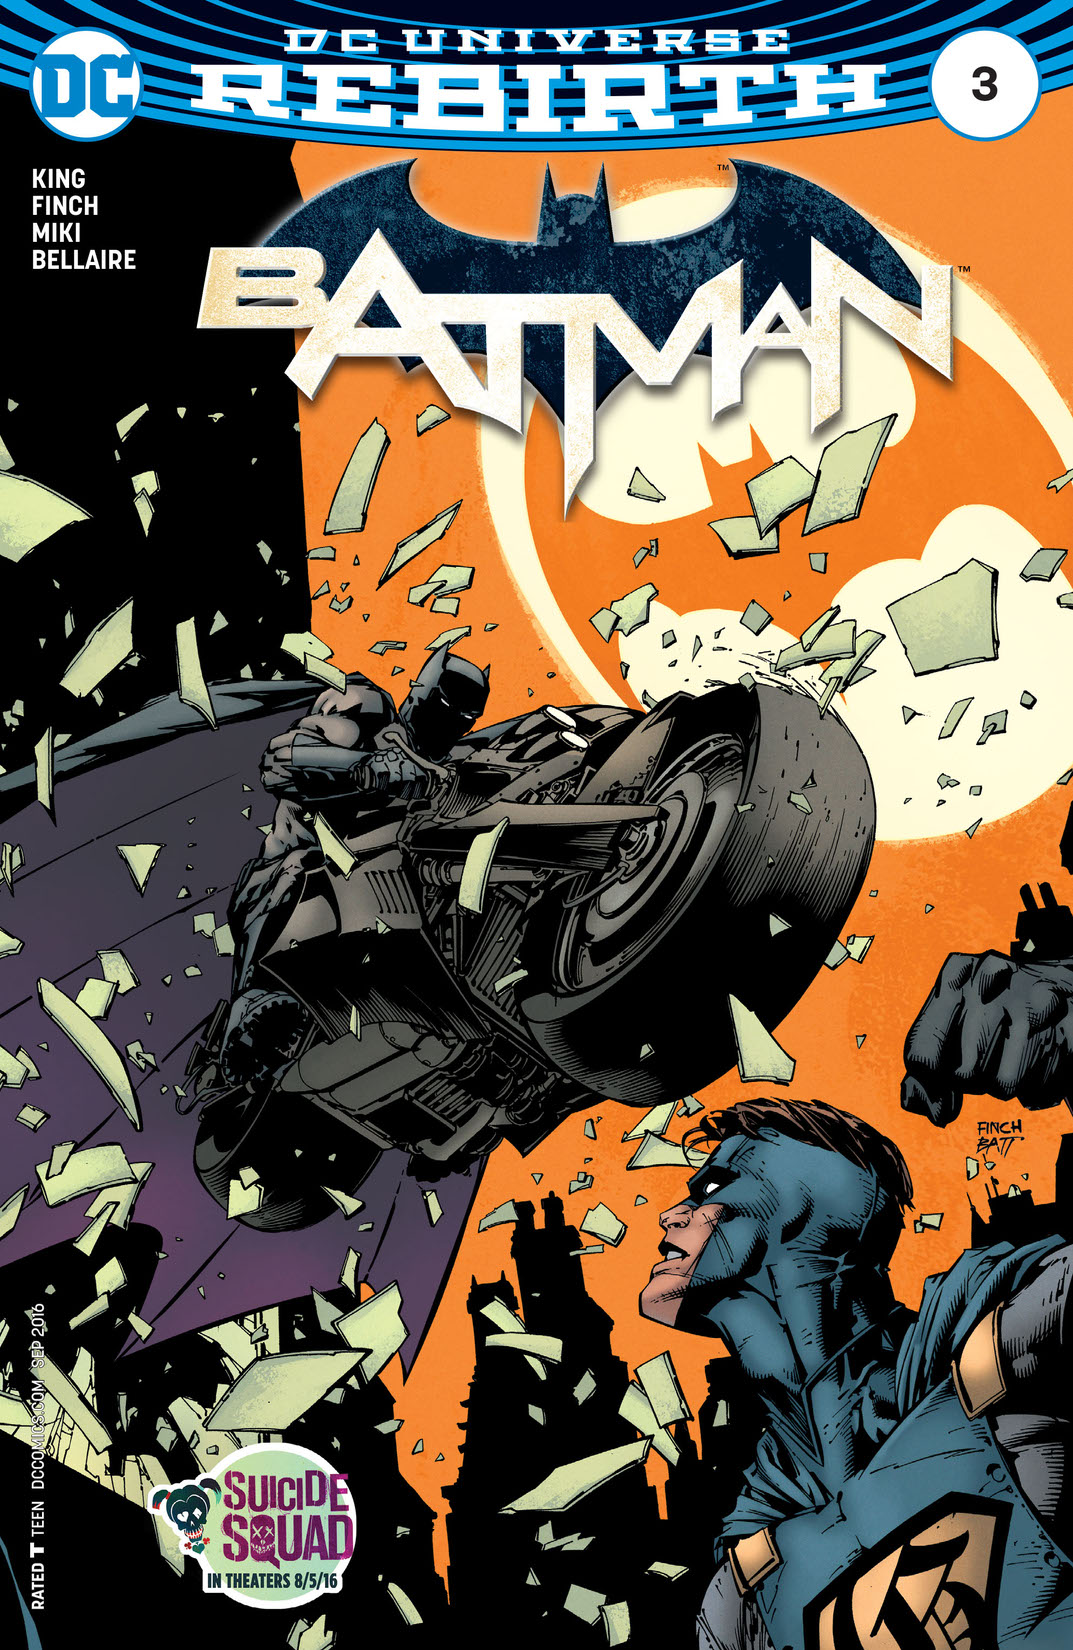 Batman (2016-) #3 preview images